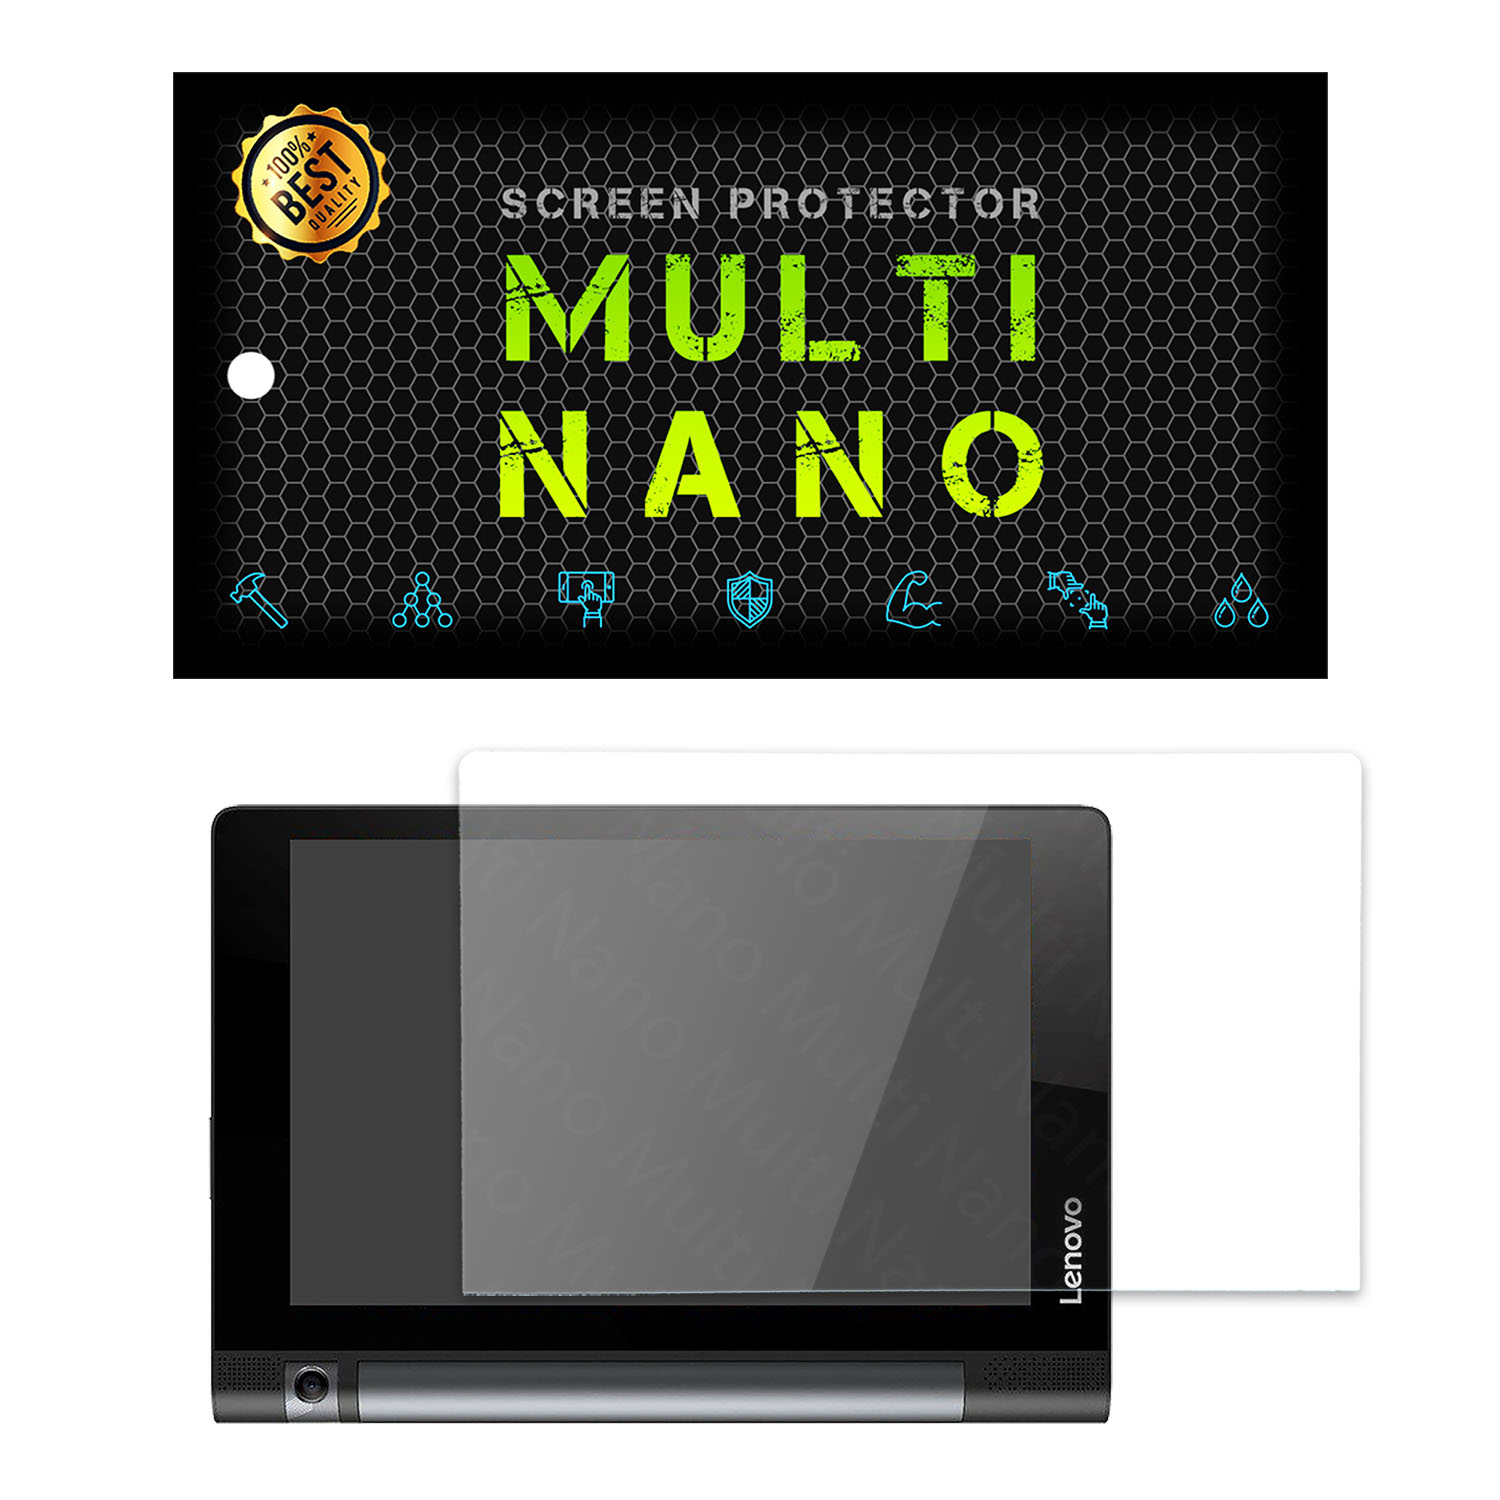 محافظ صفحه نمایش مولتی نانو مدل Pro مناسب برای تبلت لنوو Yoga Tab 3 10 / YT3-X50M